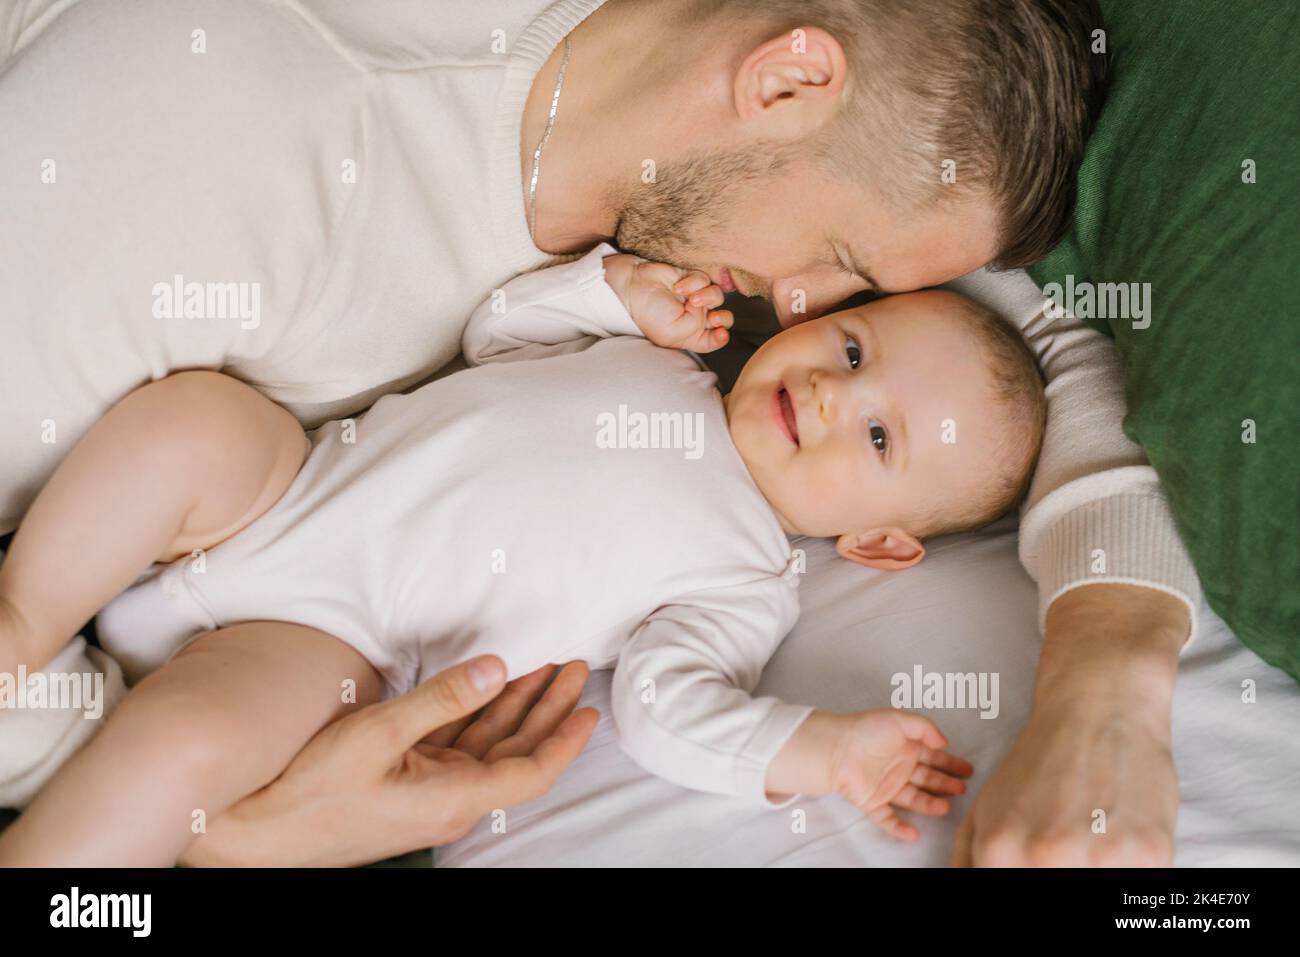 Un padre joven guapo miente en la cama en el dormitorio y abraza a su amante niño de seis meses riendo. El concepto de amor incondicional y paternidad Foto de stock